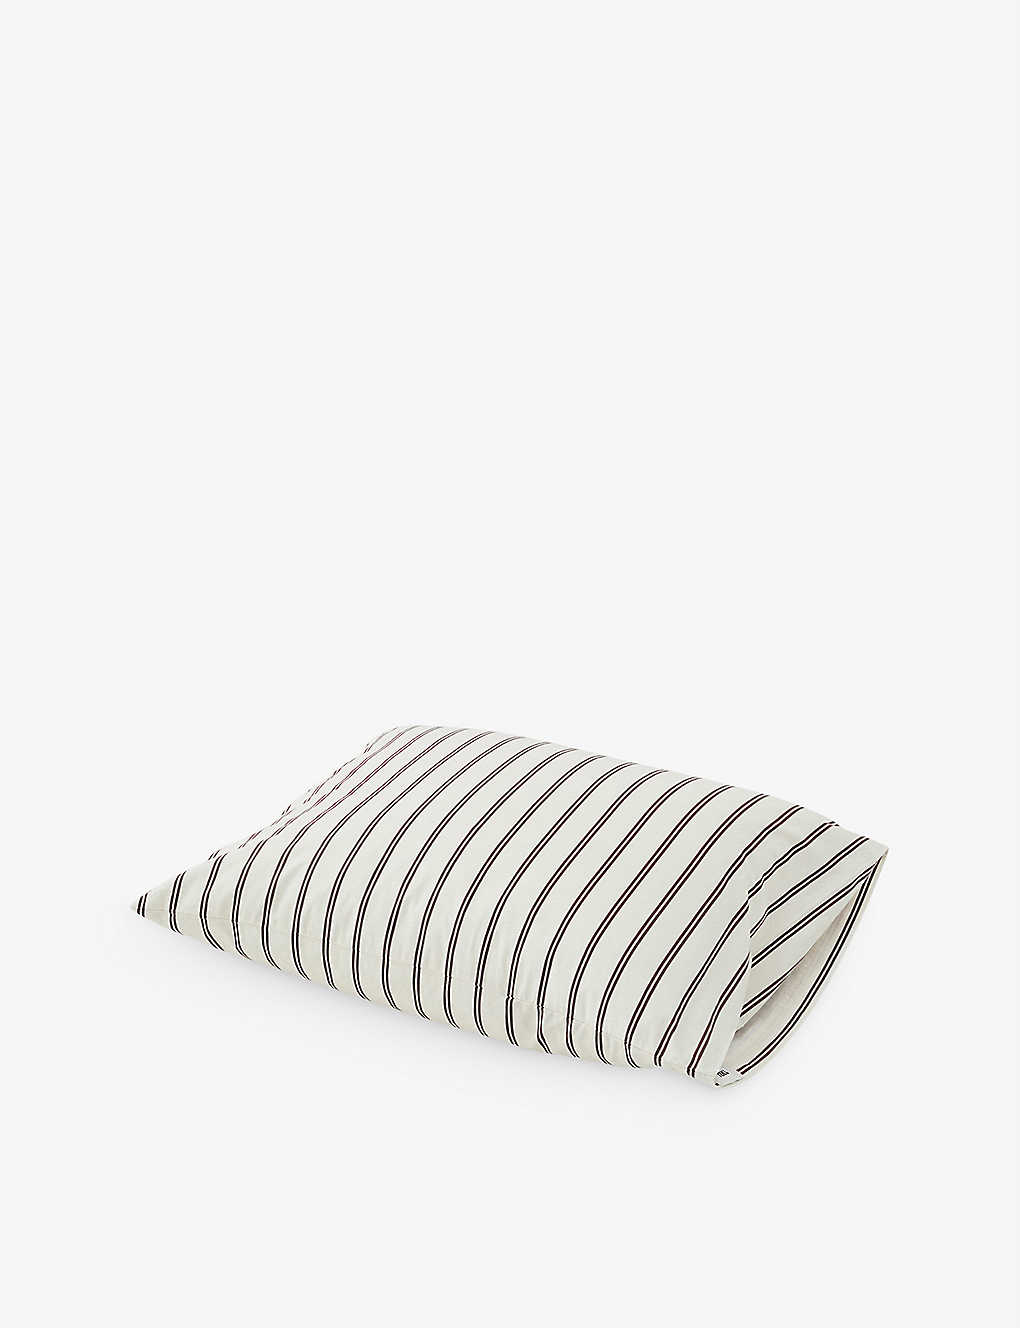 TEKLA ストライプ オーガニックコットン 枕カバー 50cm x 70cm Stripe organic-cotton pillowcase BEIGE hopper stripes